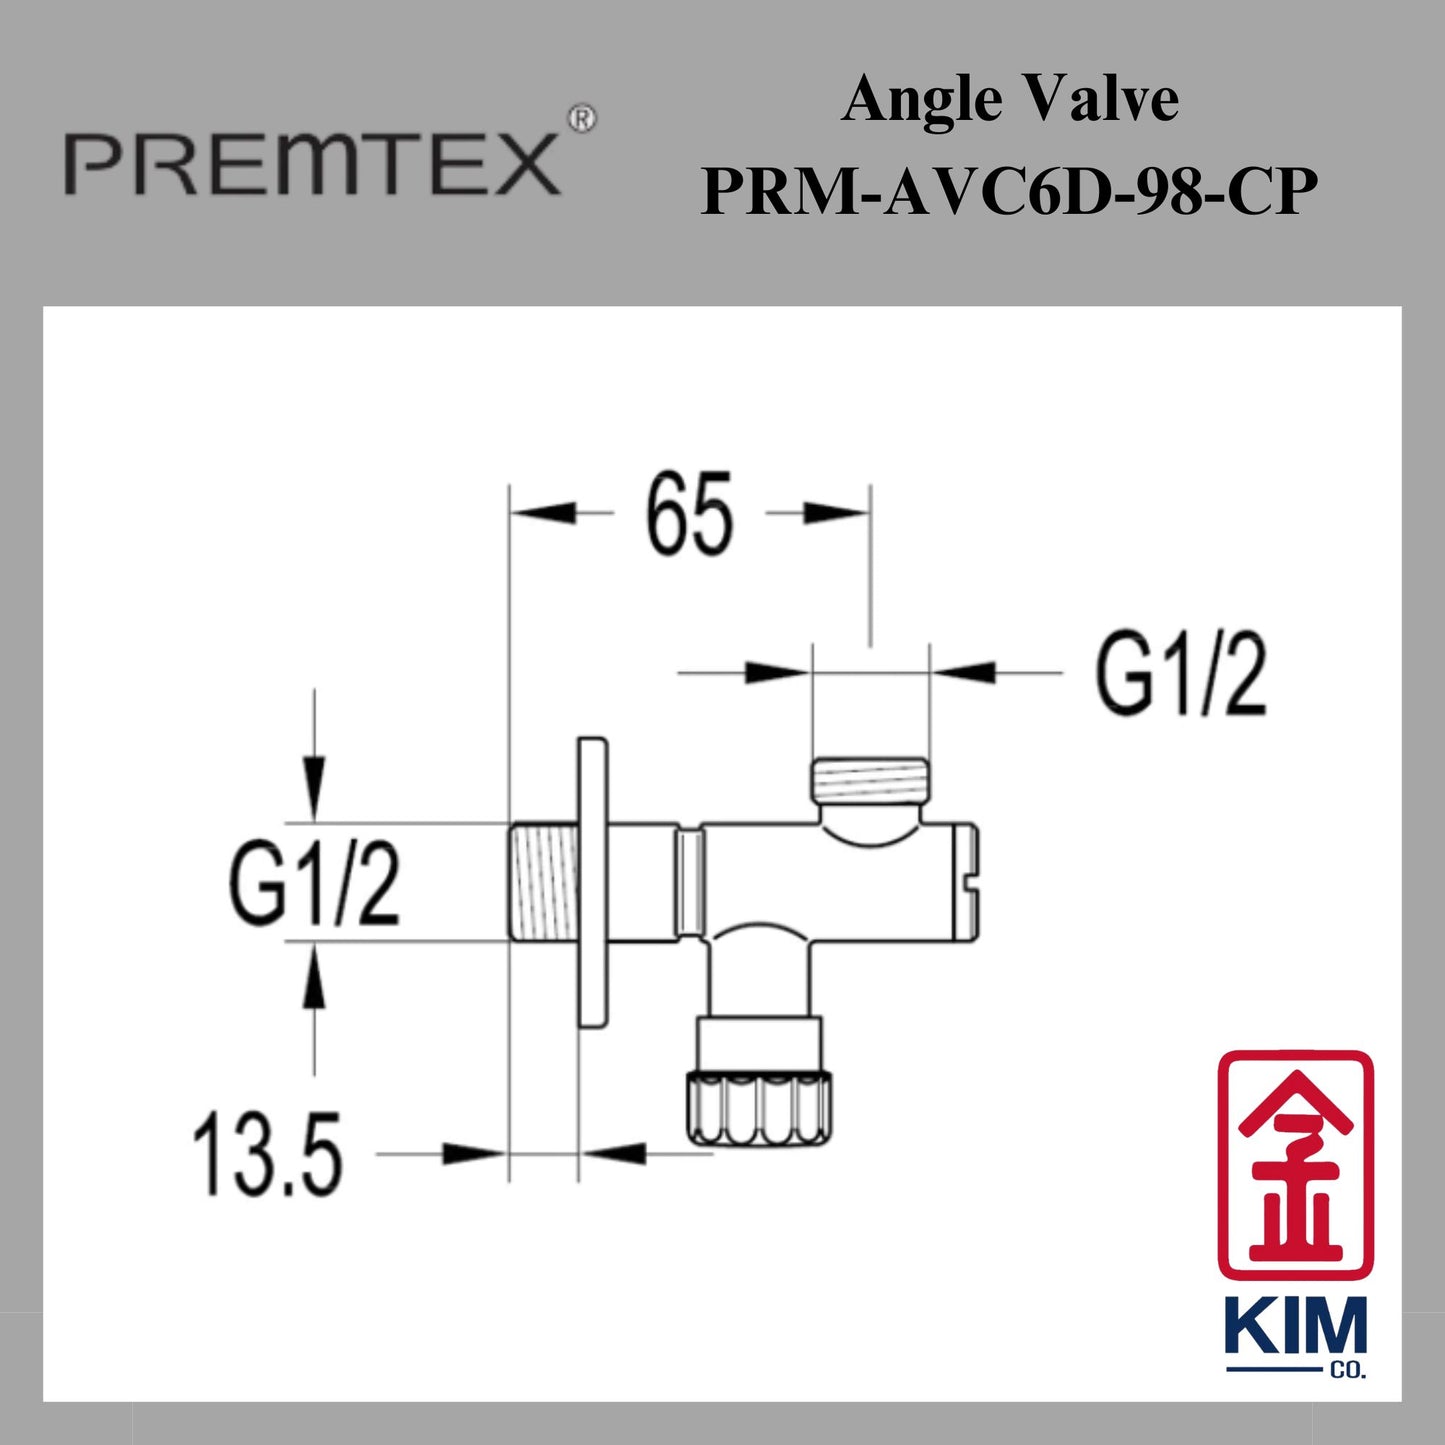 Premtex Angle Valve (PRM-AVC6D-98-CP)